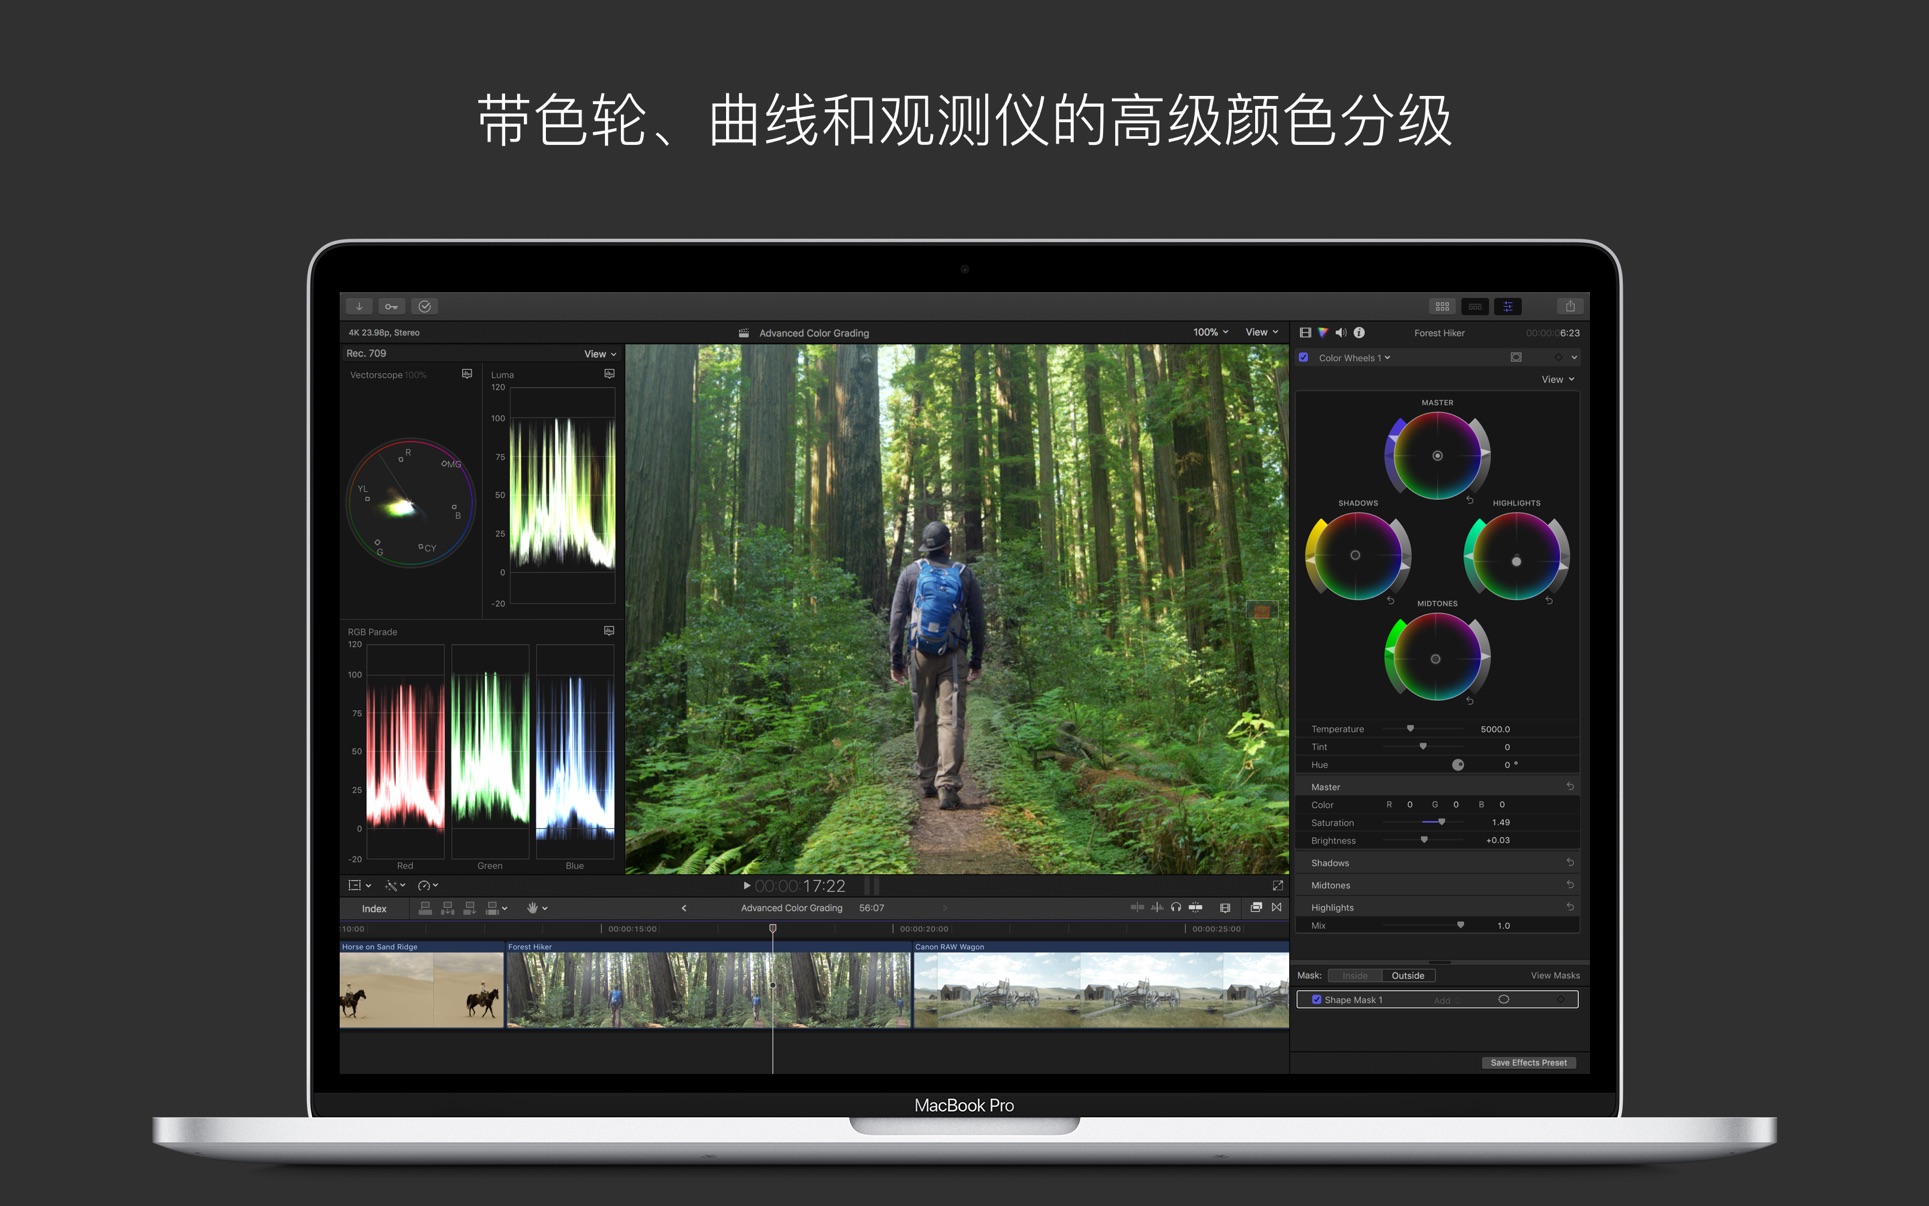 视频制作 Final Cut Pro for Mac 10.6.6 中文破解版 最强大视频后期制作软件